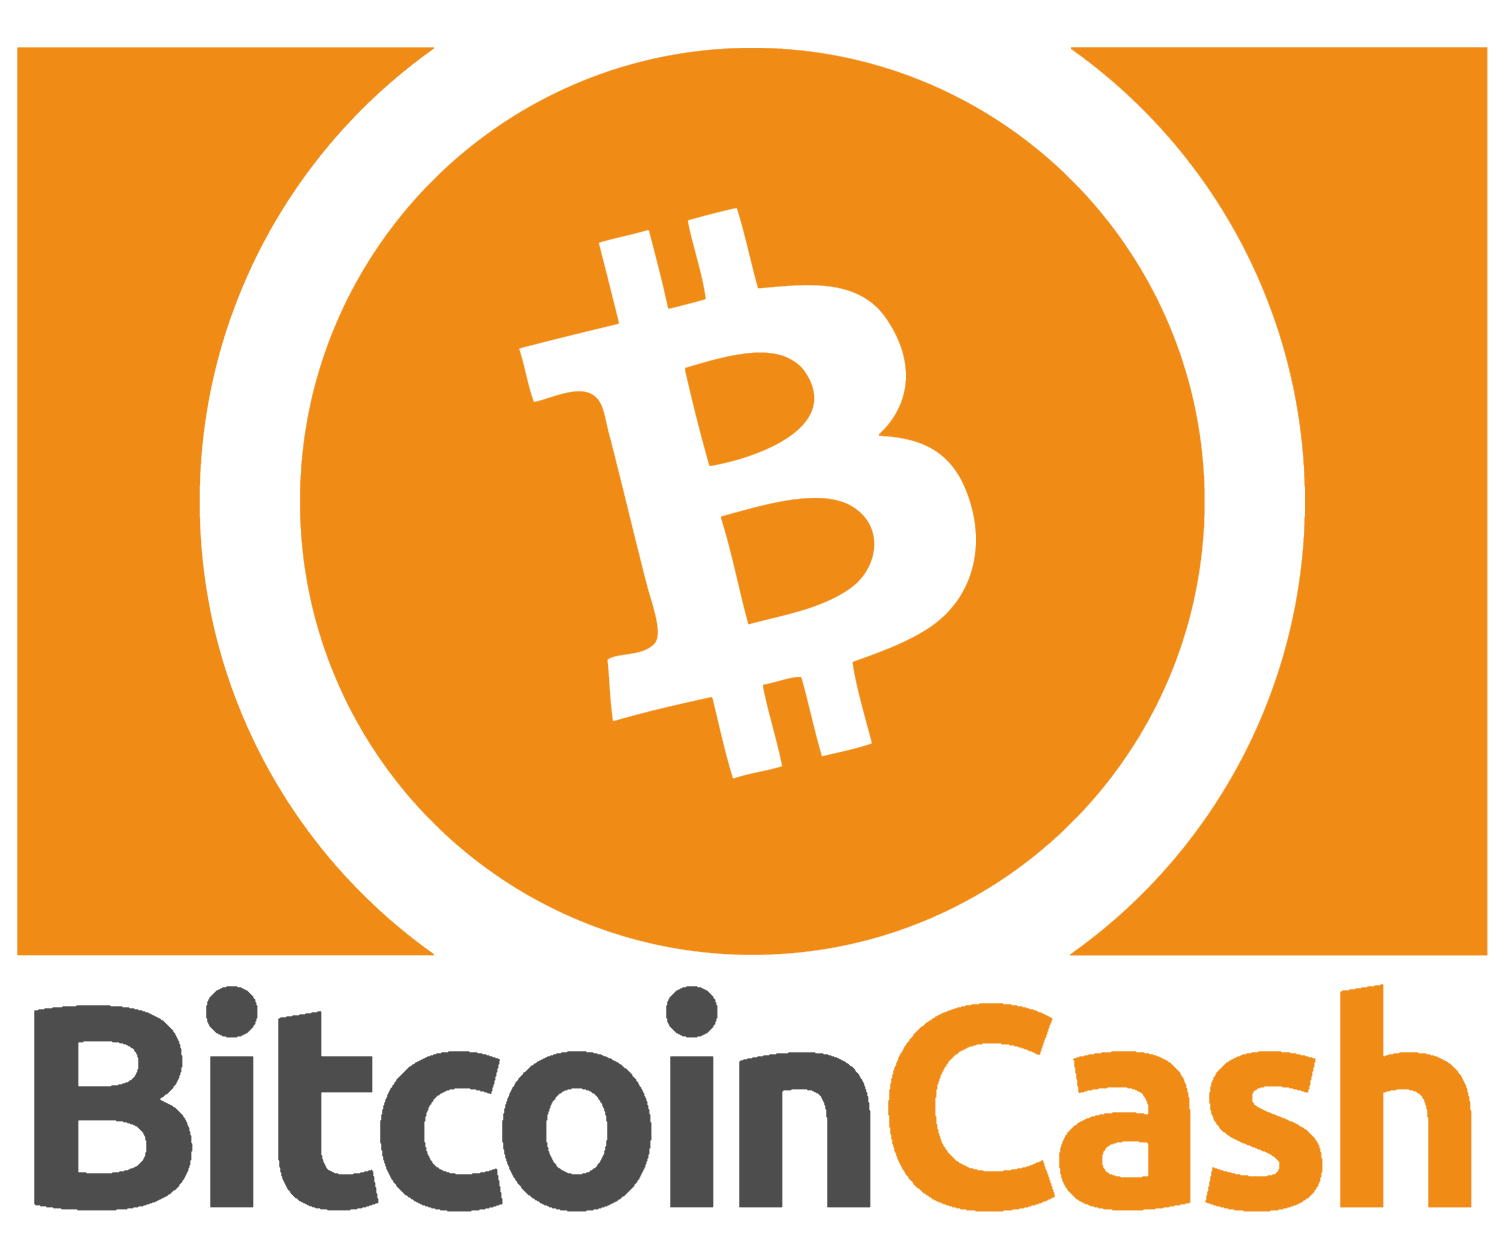 0.00002304 bitcoin cash